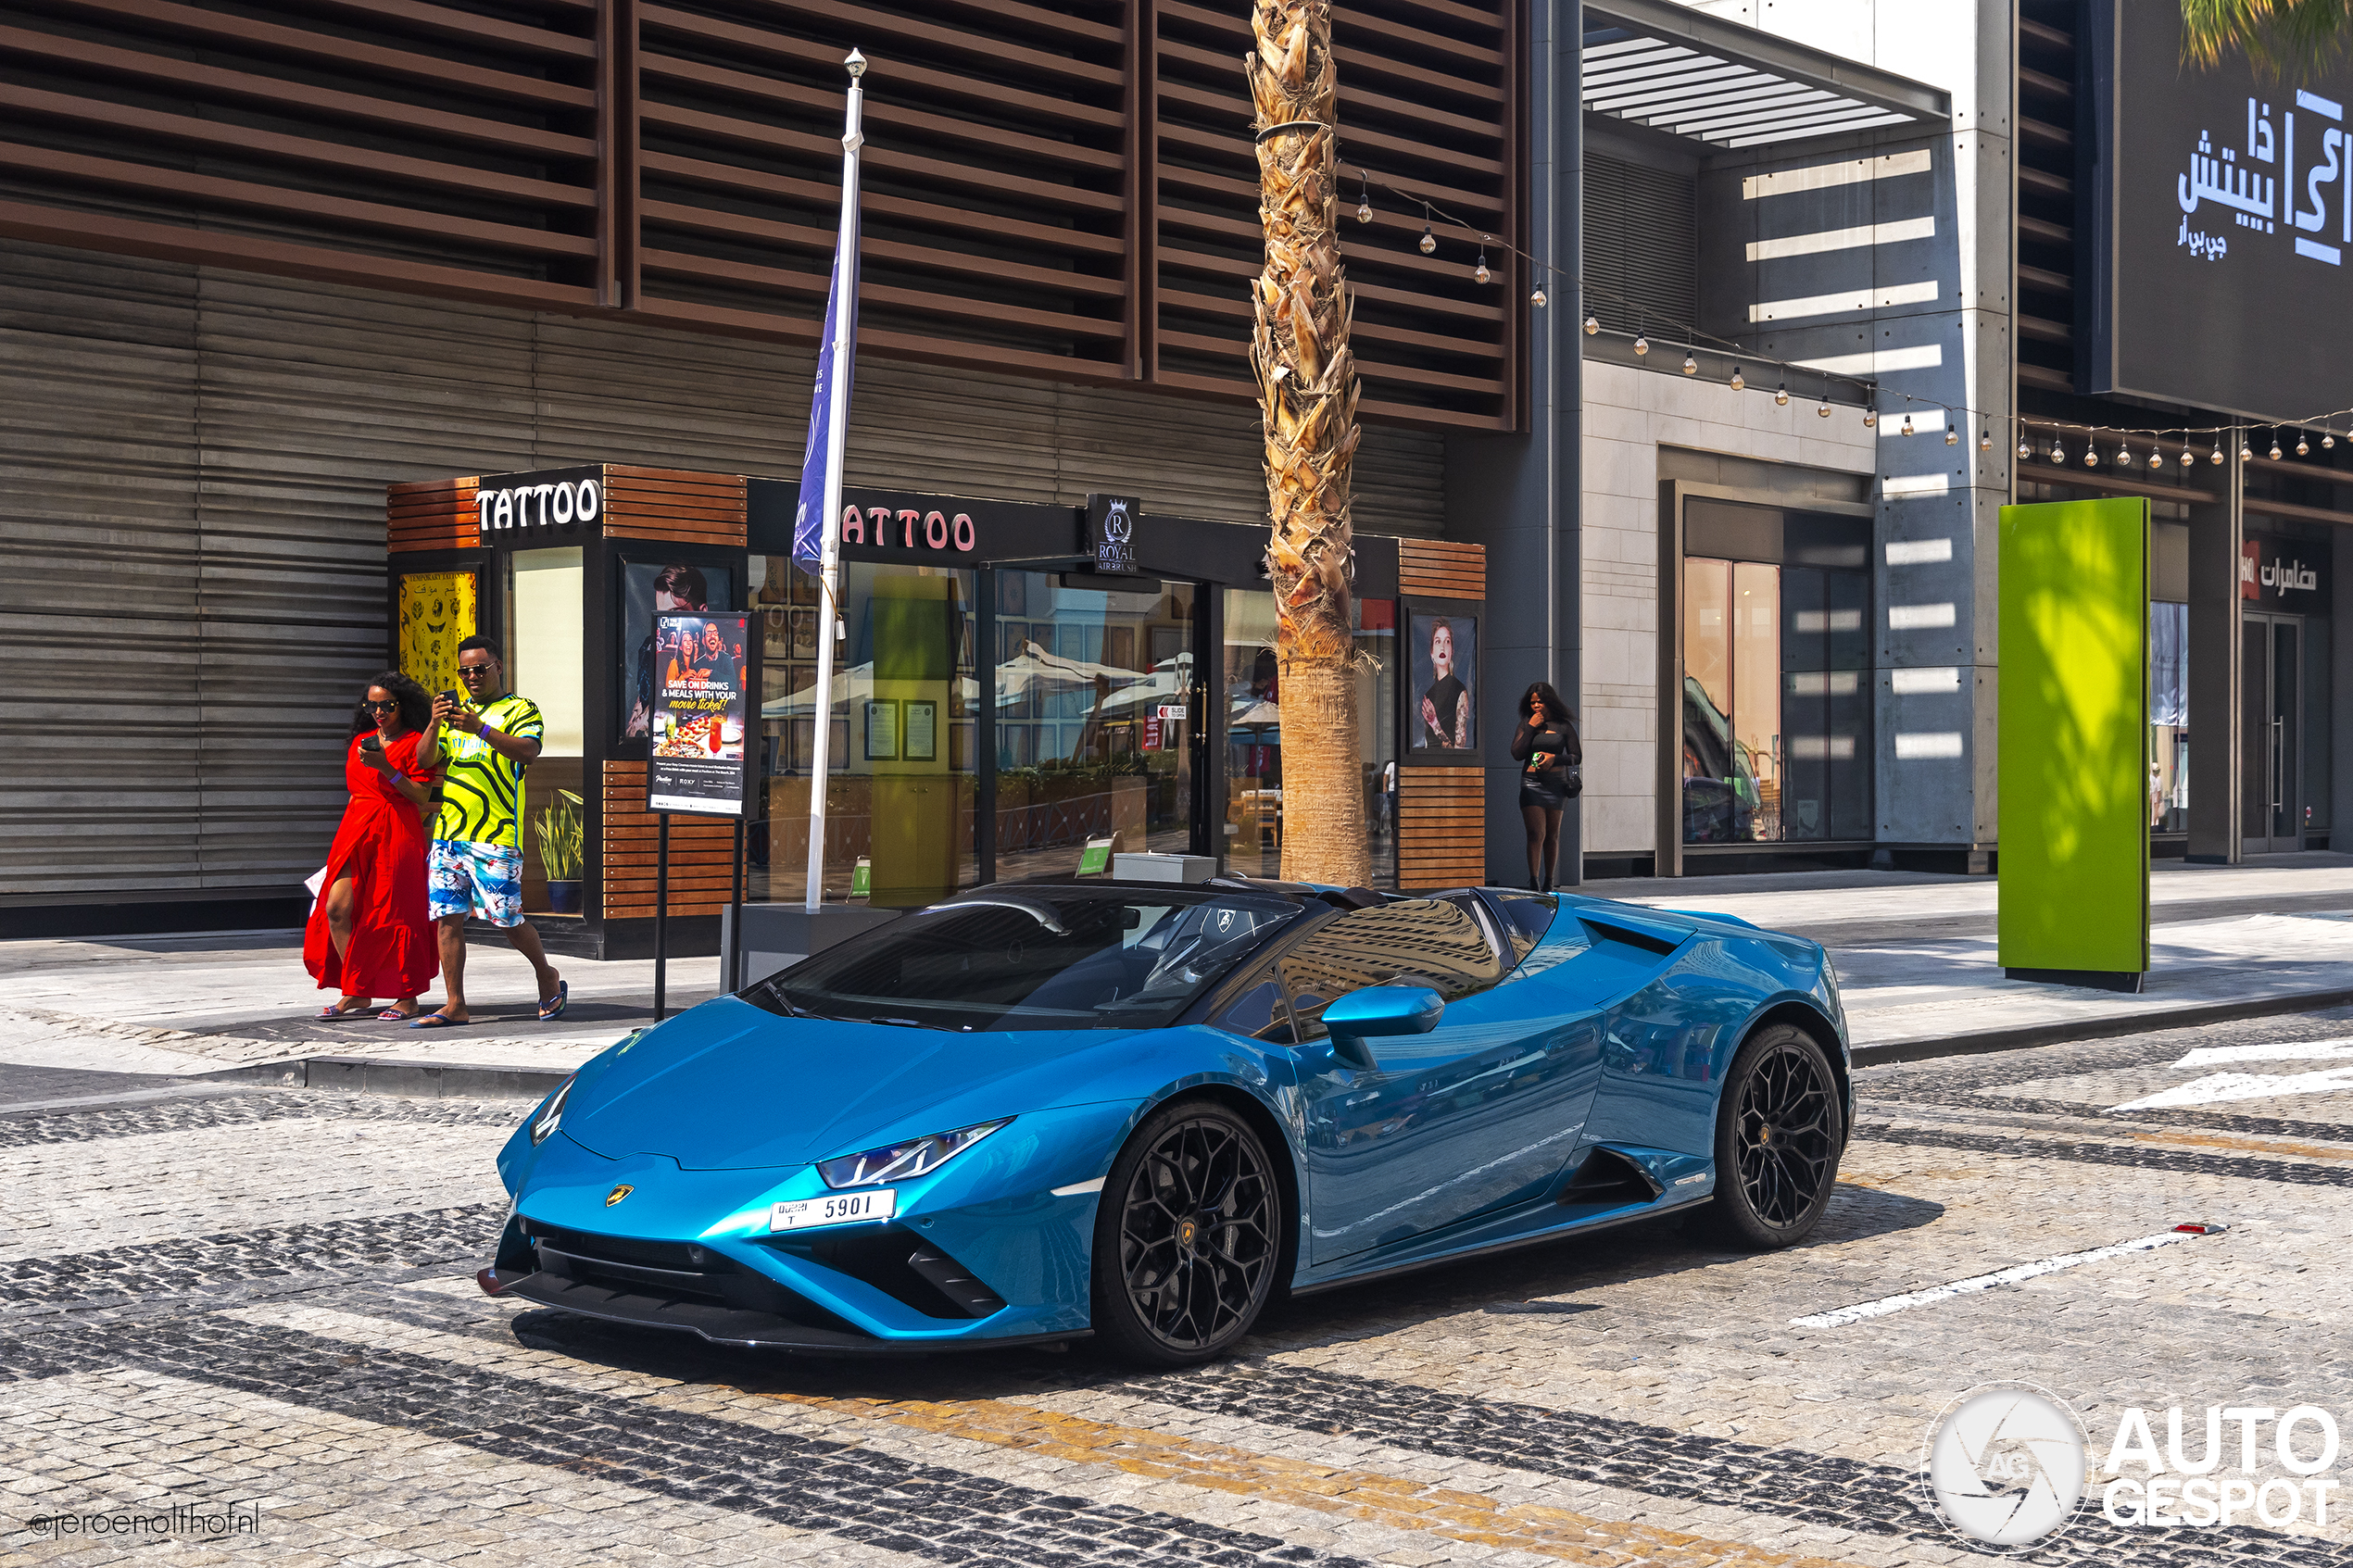 Bloedmooie Lamborghini Huracan straalt in Dubai